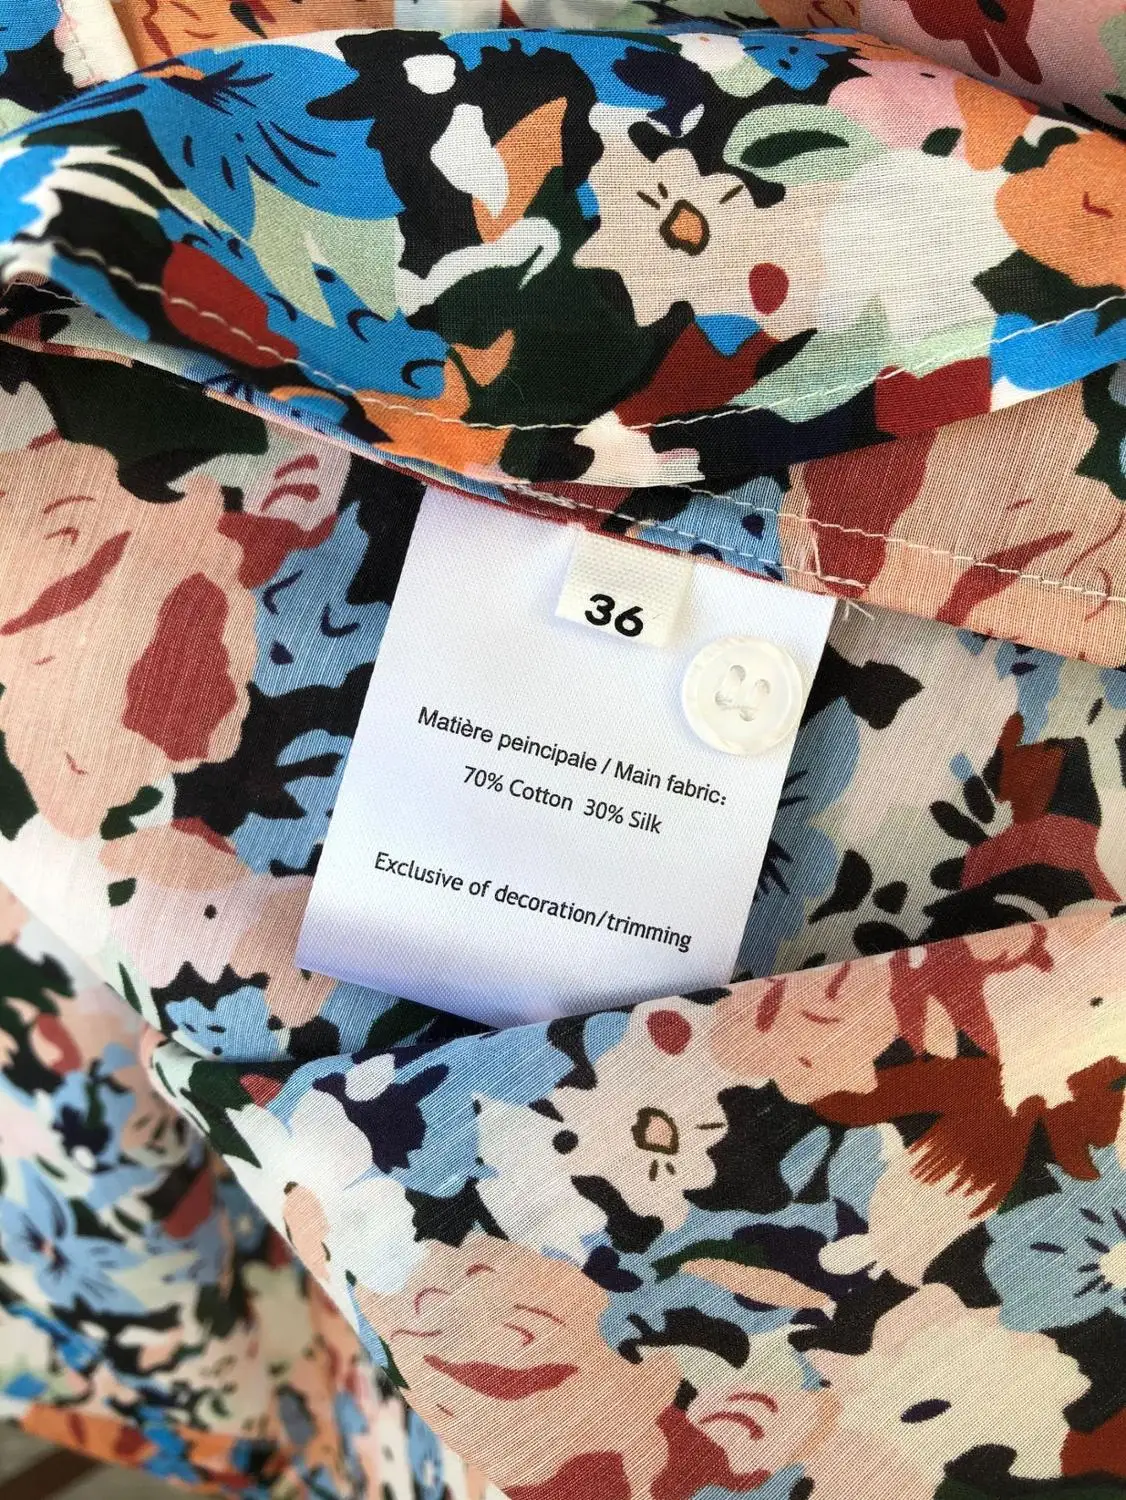 Las mujeres de la Impresión Floral de Manga Larga de la Camisa de Seda de Algodón Romántico francés Gire hacia abajo de Collar Casual Blusa de 2020 Principios de la Primavera 1